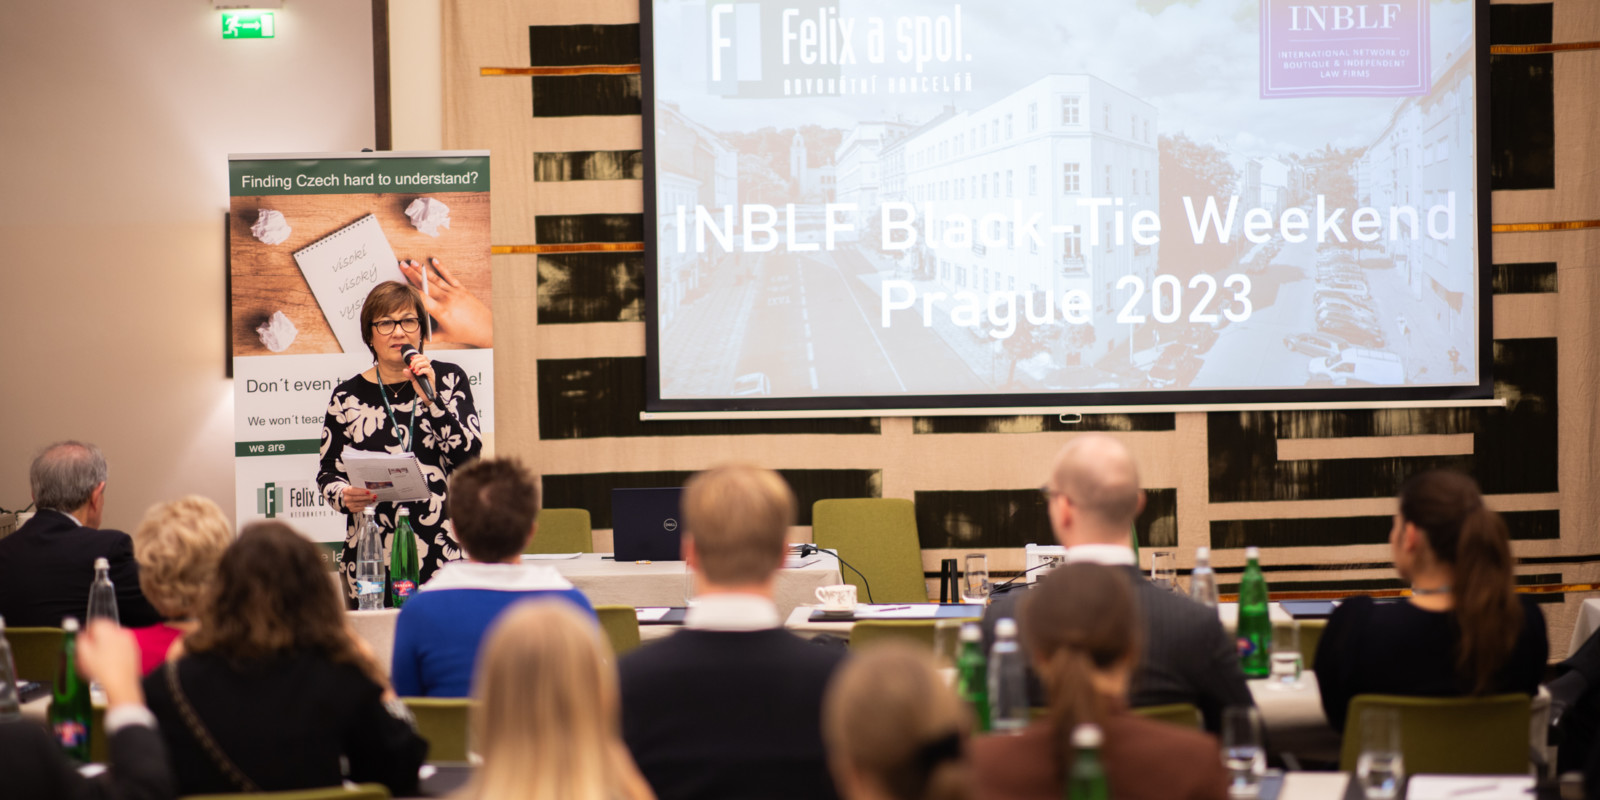 Setkání členů celosvětové sítě INBLF se konalo v Praze